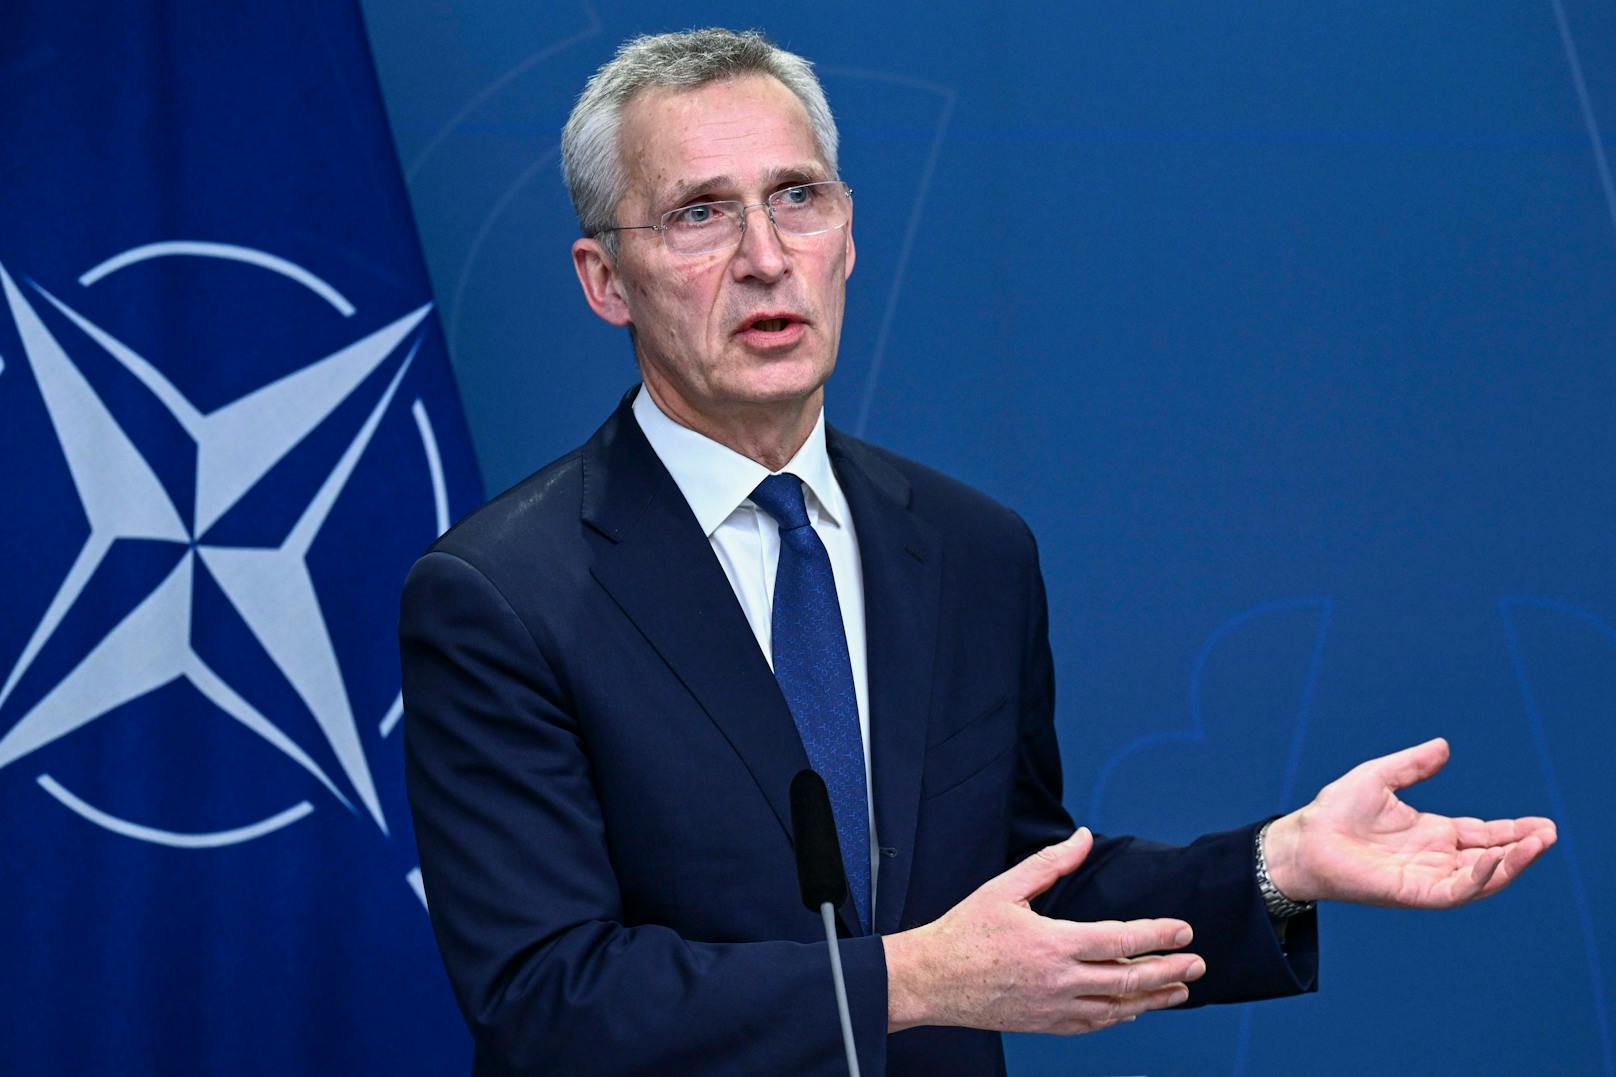 Nato-Generalsekretär Jens Stoltenberg verkündete am Montagmittag, dass Finnland morgen, Dienstag, offiziell als 31. Mitglied in die Nato aufgenommen wird.